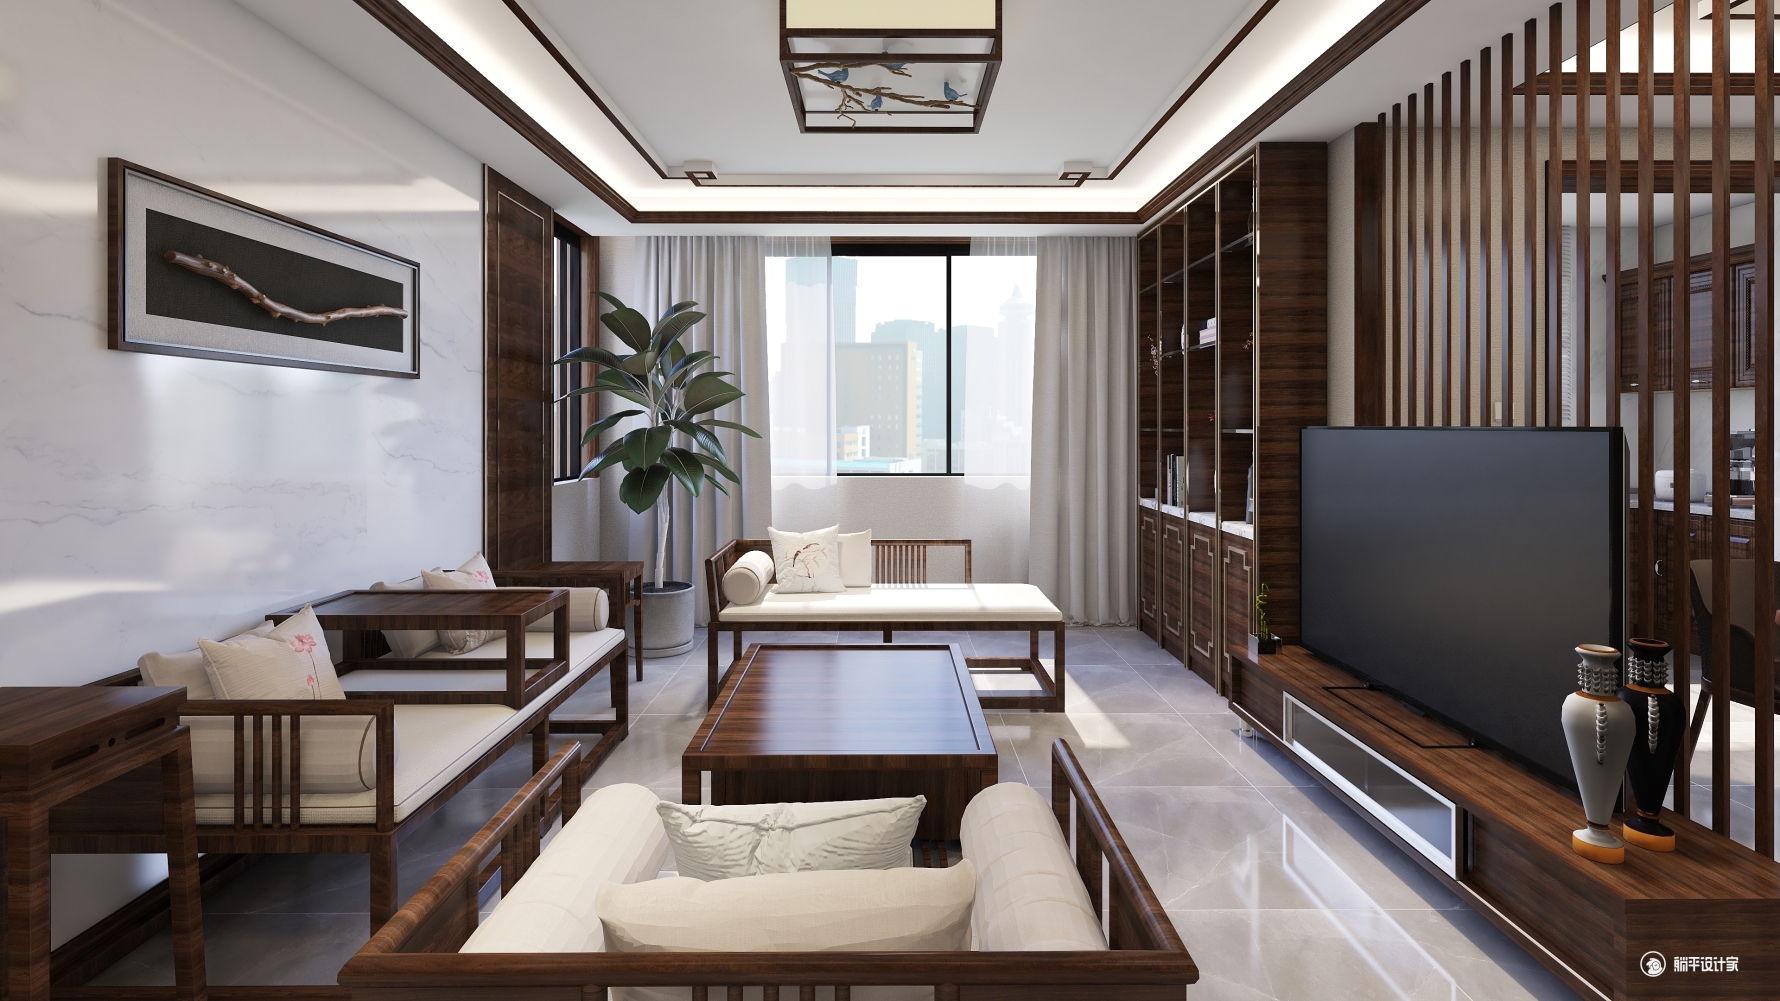 金域世家-新中式 - 中式风格三室两厅装修效果图 - 王卫强设计效果图 - 每平每屋·设计家